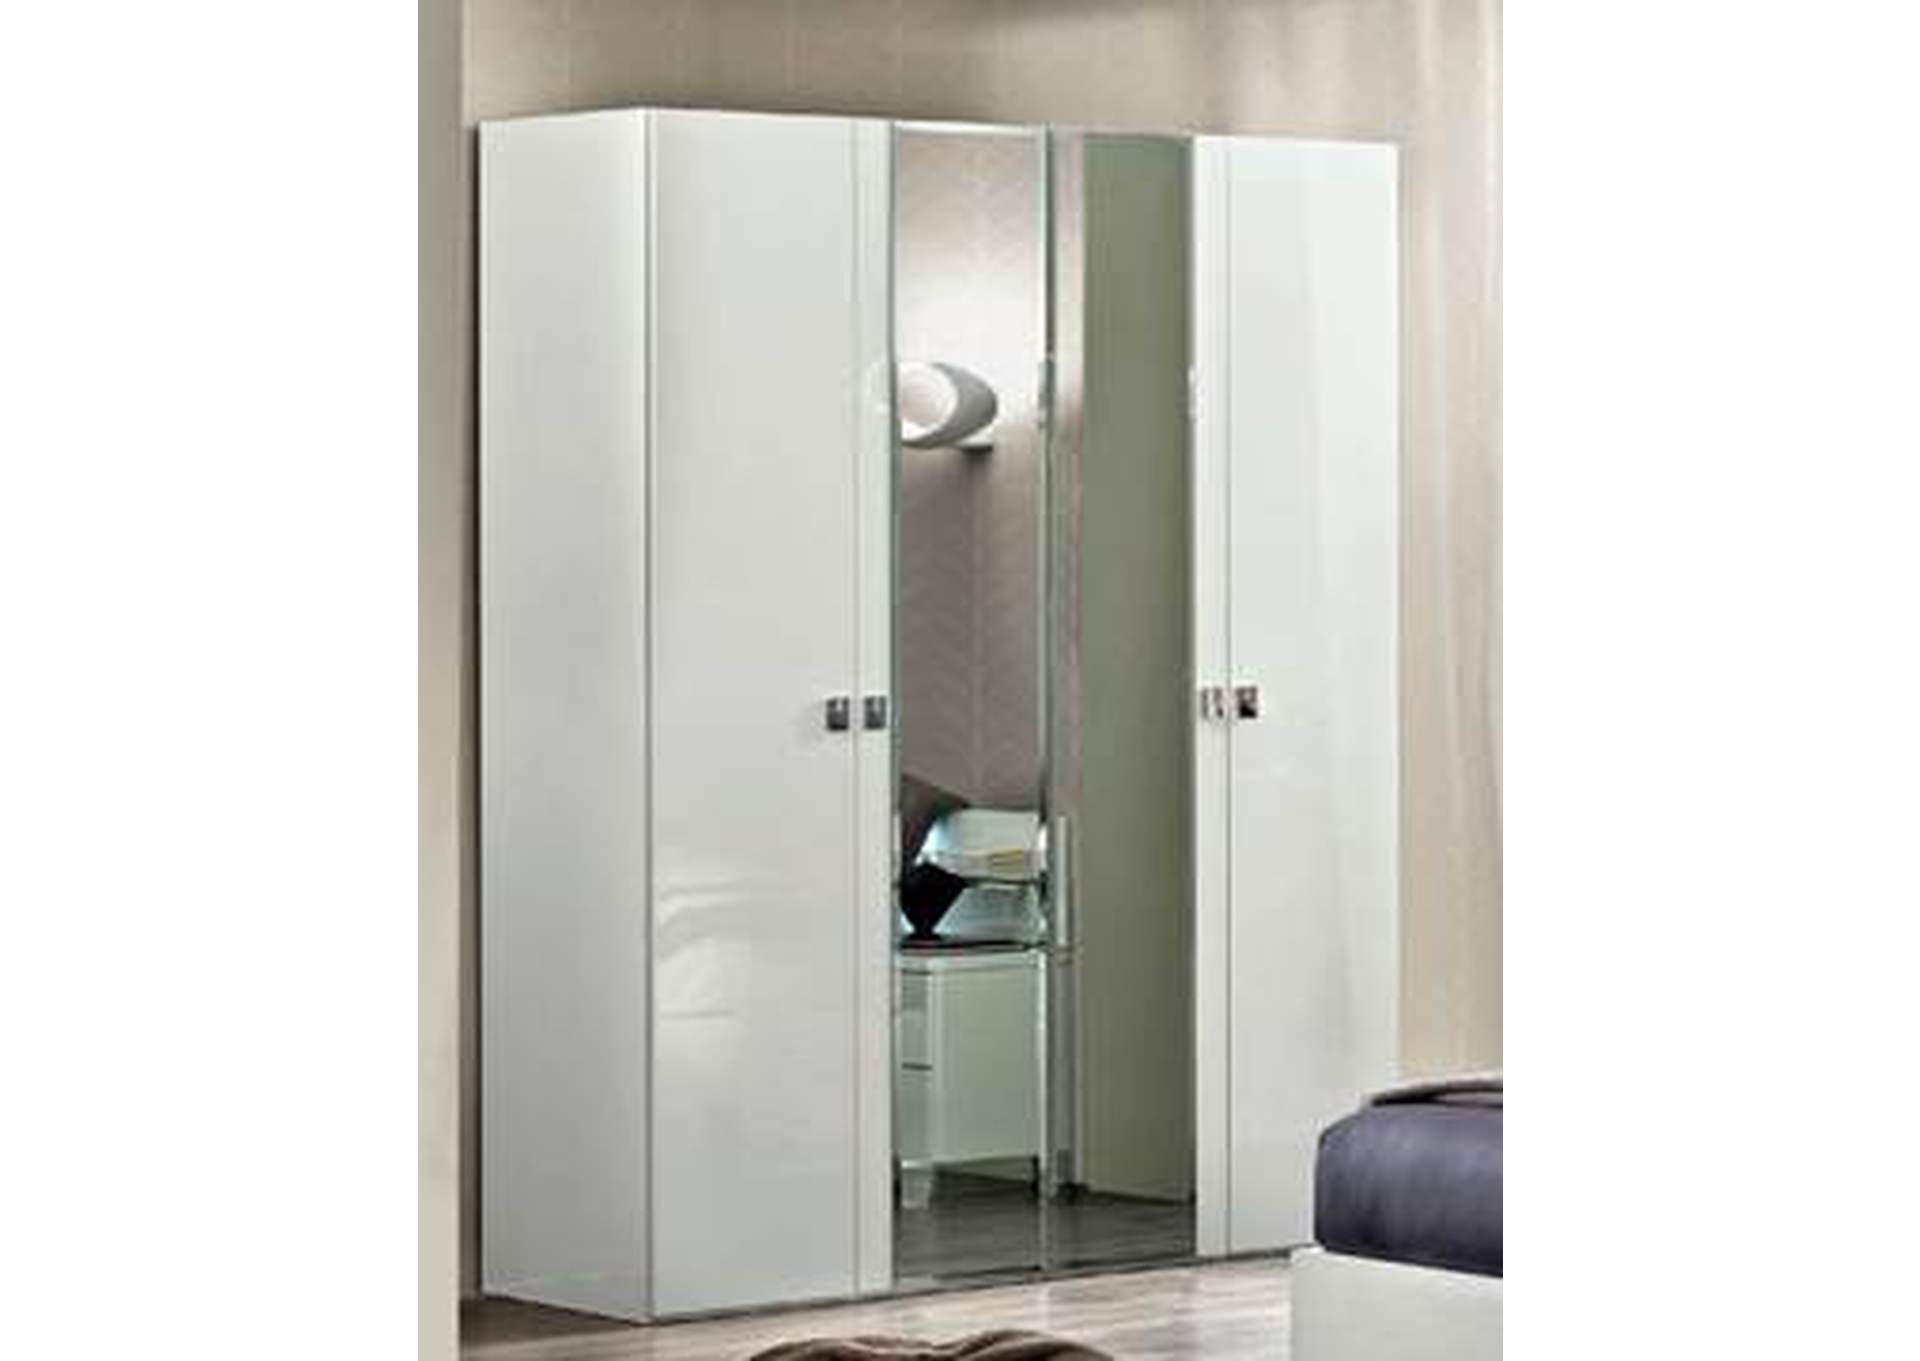 Onda 4 Door Wardrobe with 2 Mirror Doors White,ESF Wholesale Furniture